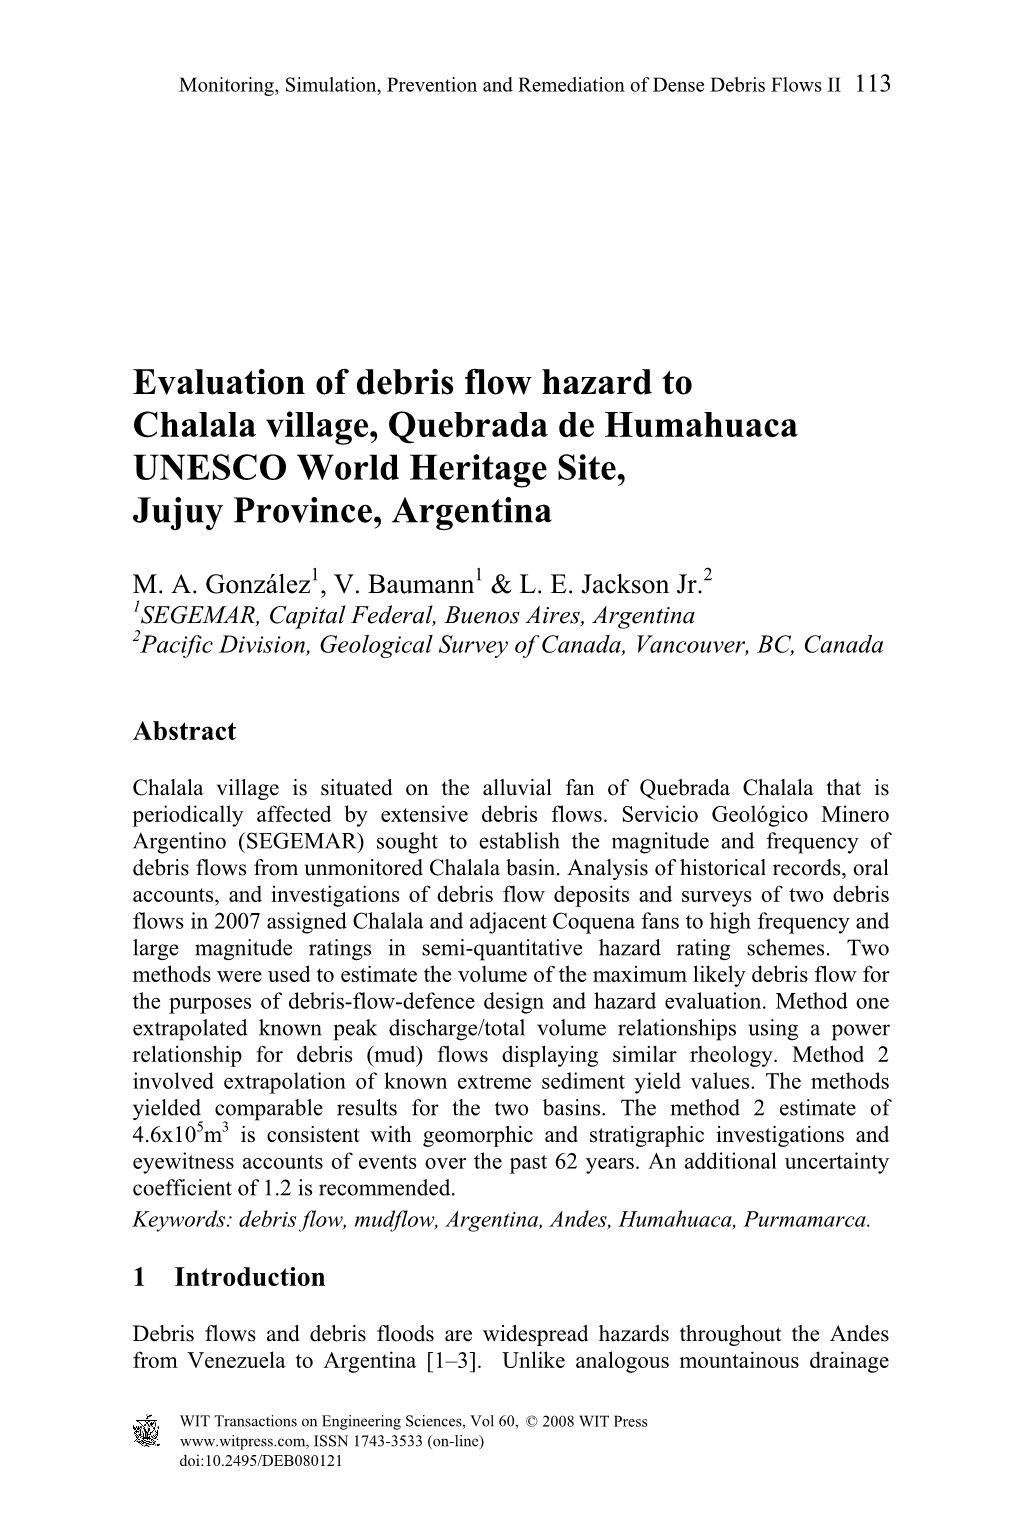 Evaluation of Debris Flow Hazard to Chalala Village, Quebrada De Humahuaca UNESCO World Heritage Site, Jujuy Province, Argentina